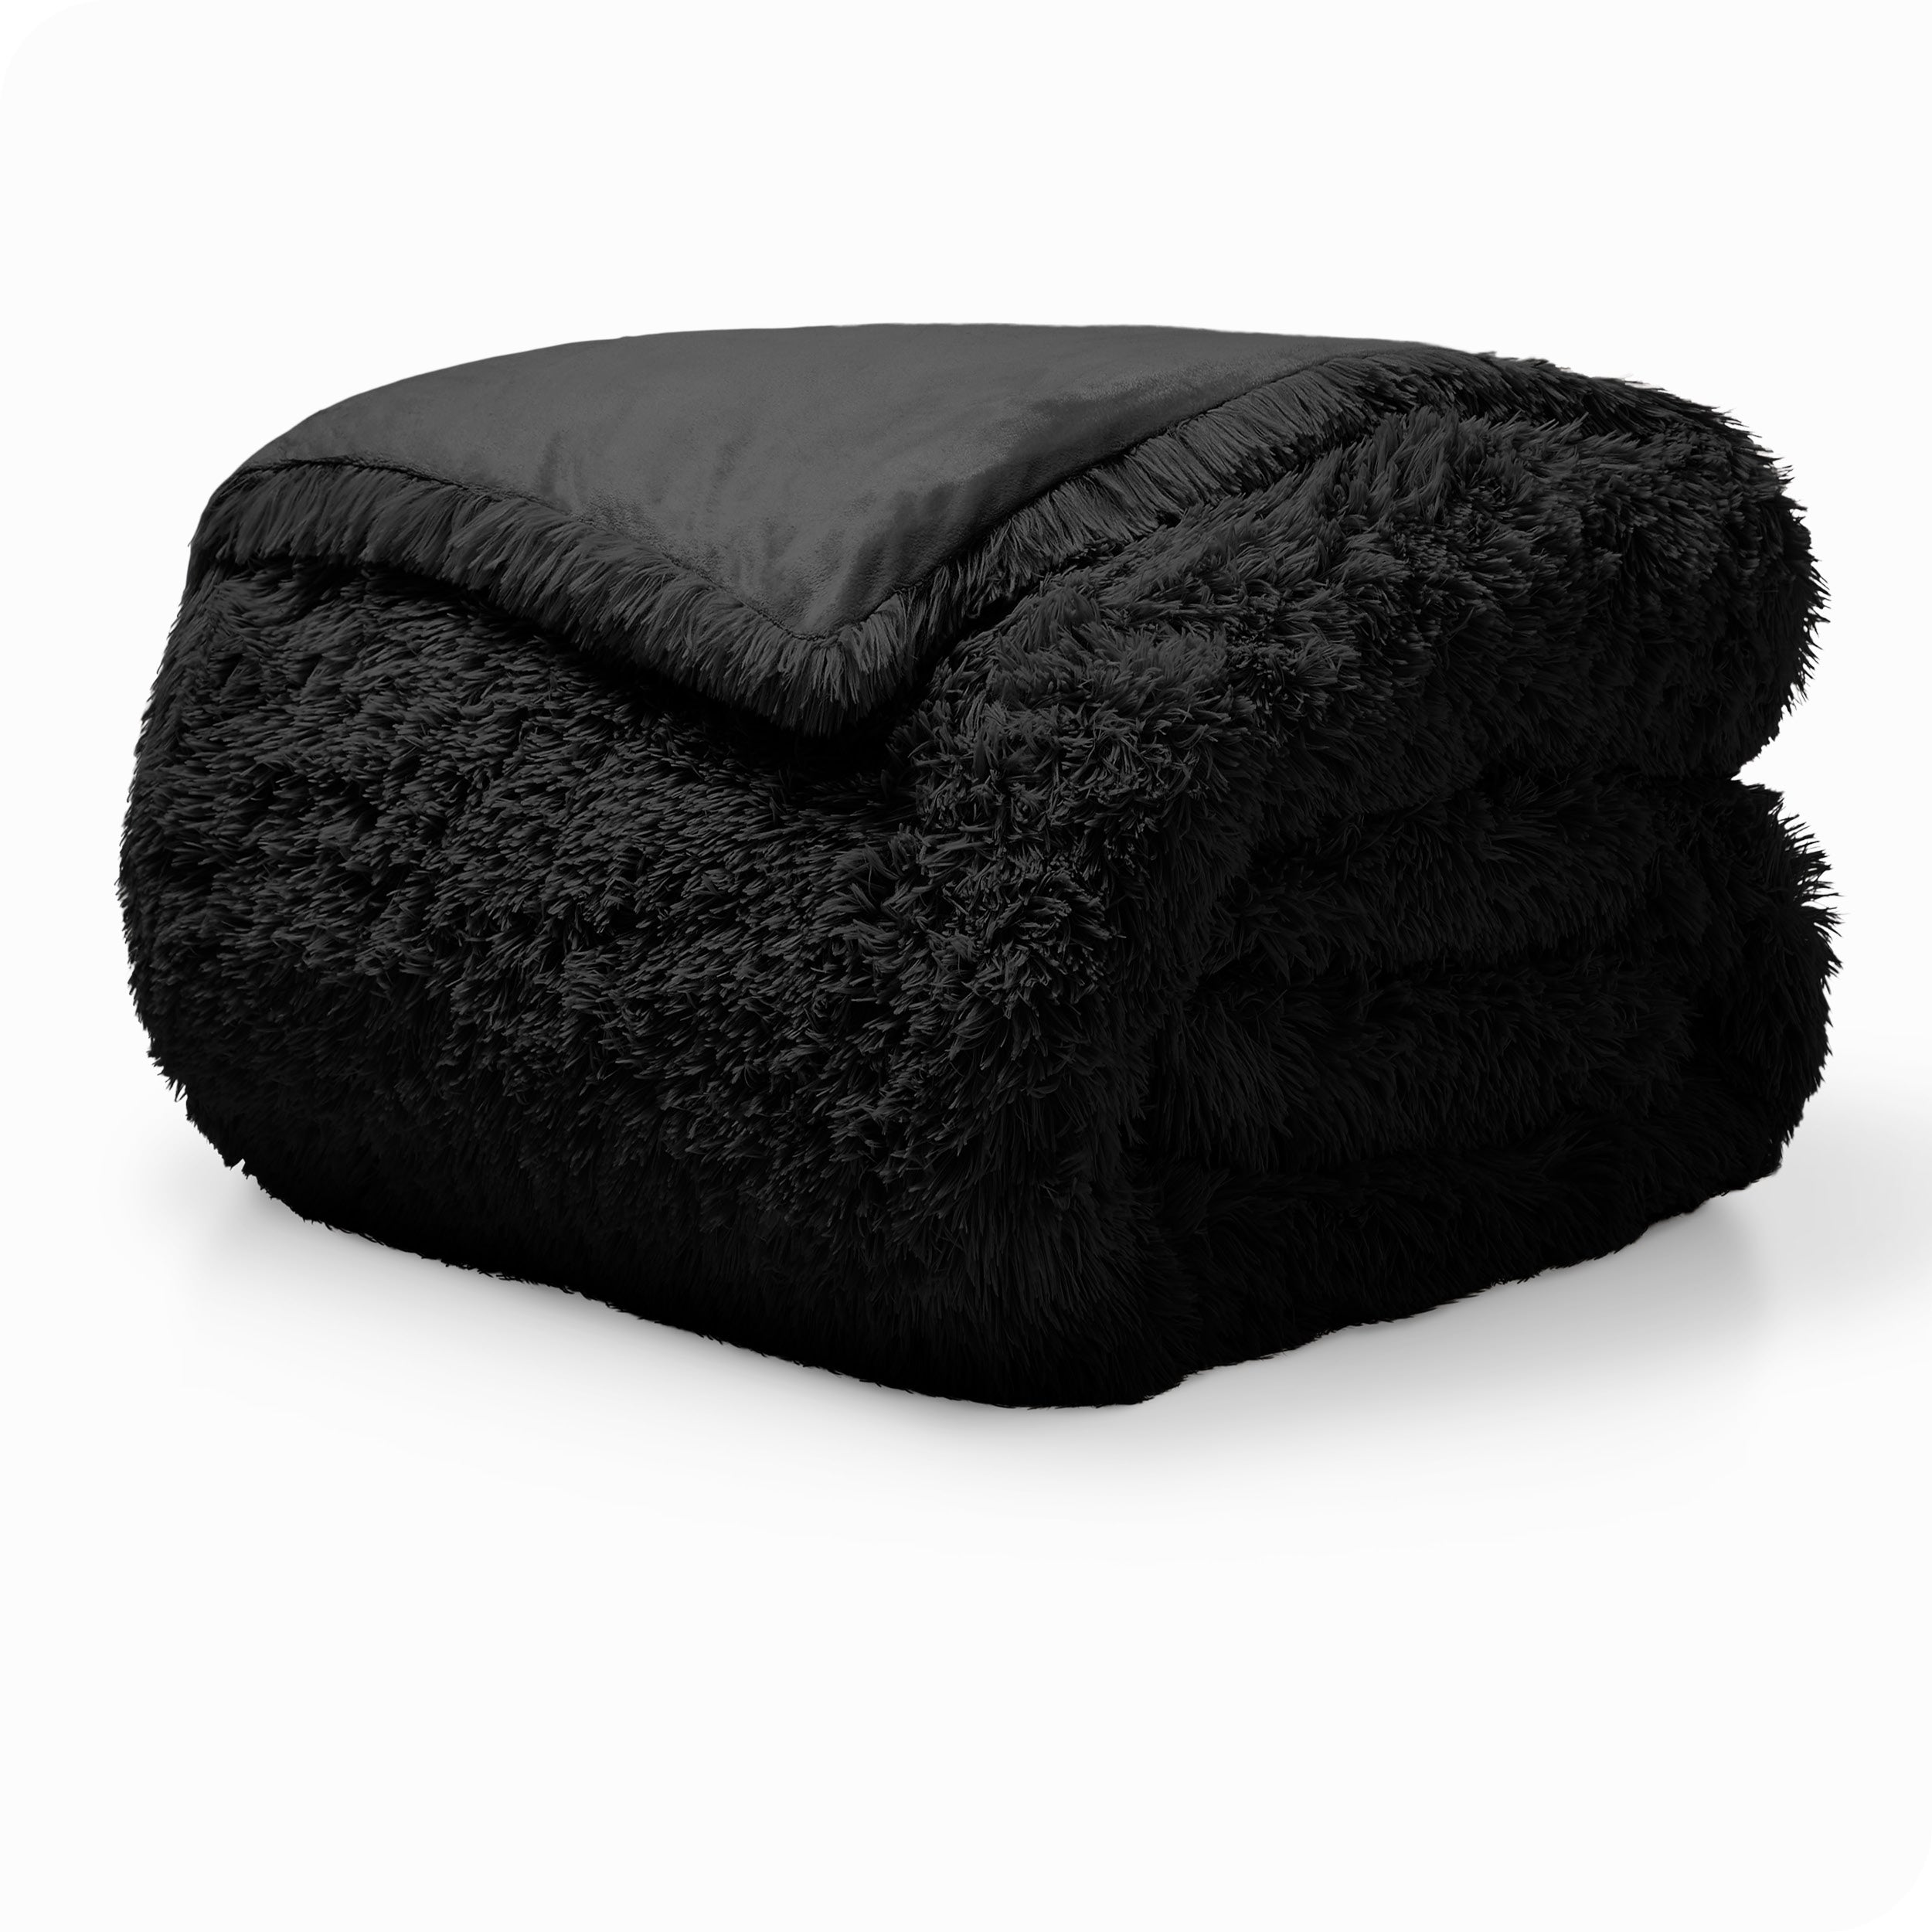 A black shaggy duvet cover folded neatly